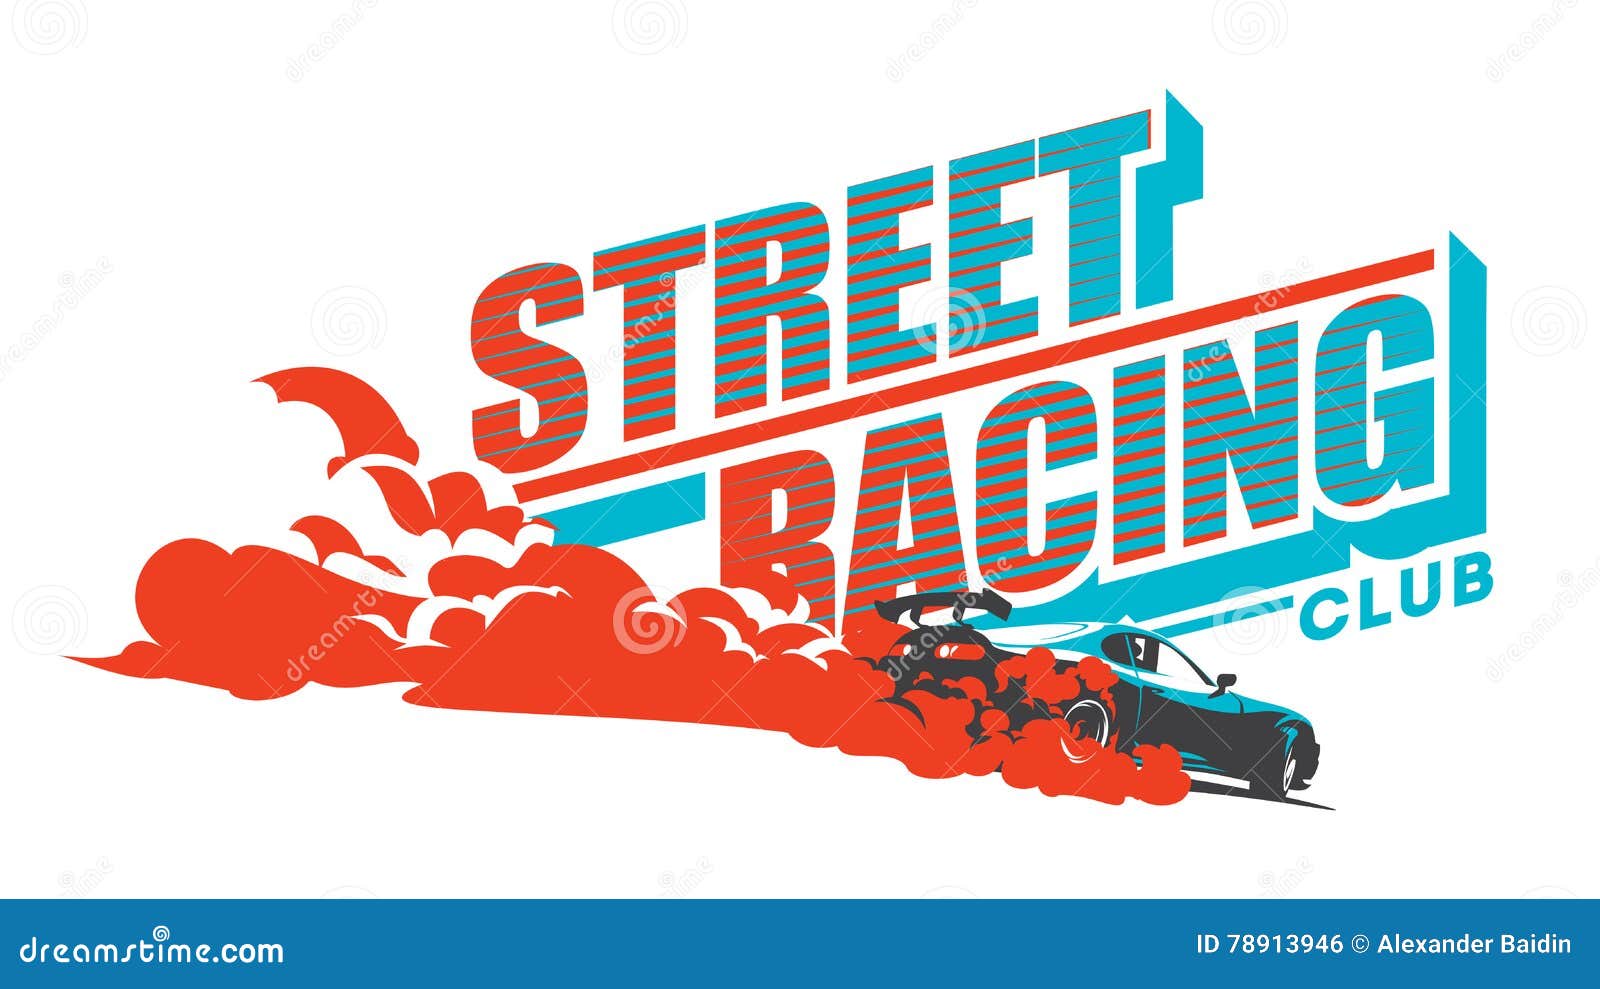 burnout car, japanese drift sport, street racing